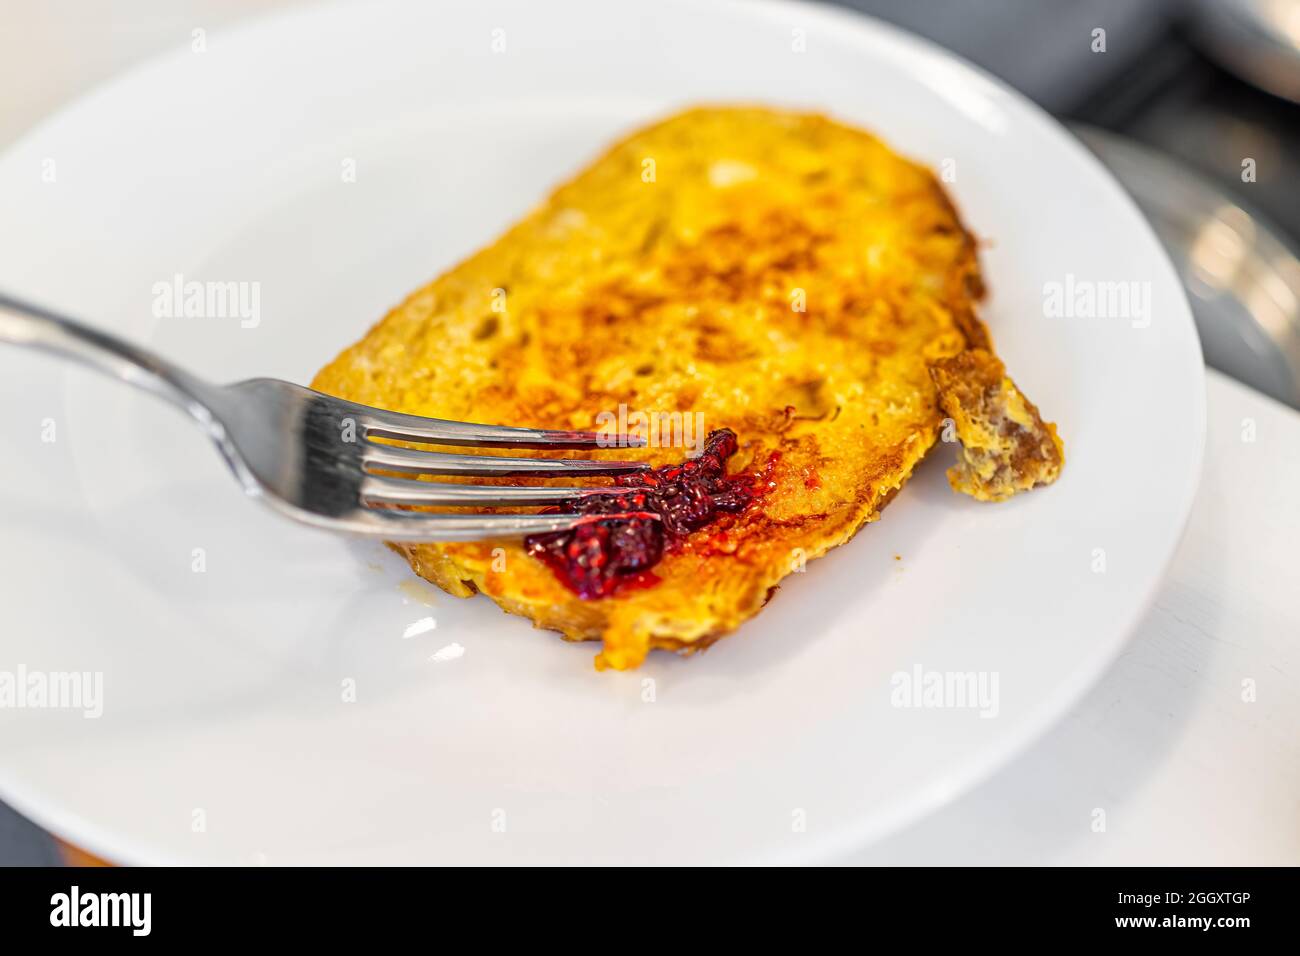 Pain de brioche à la challah cuit maison pain grillé français servi sur une assiette blanche avec fourchette et confiture de framboise sucrée Banque D'Images